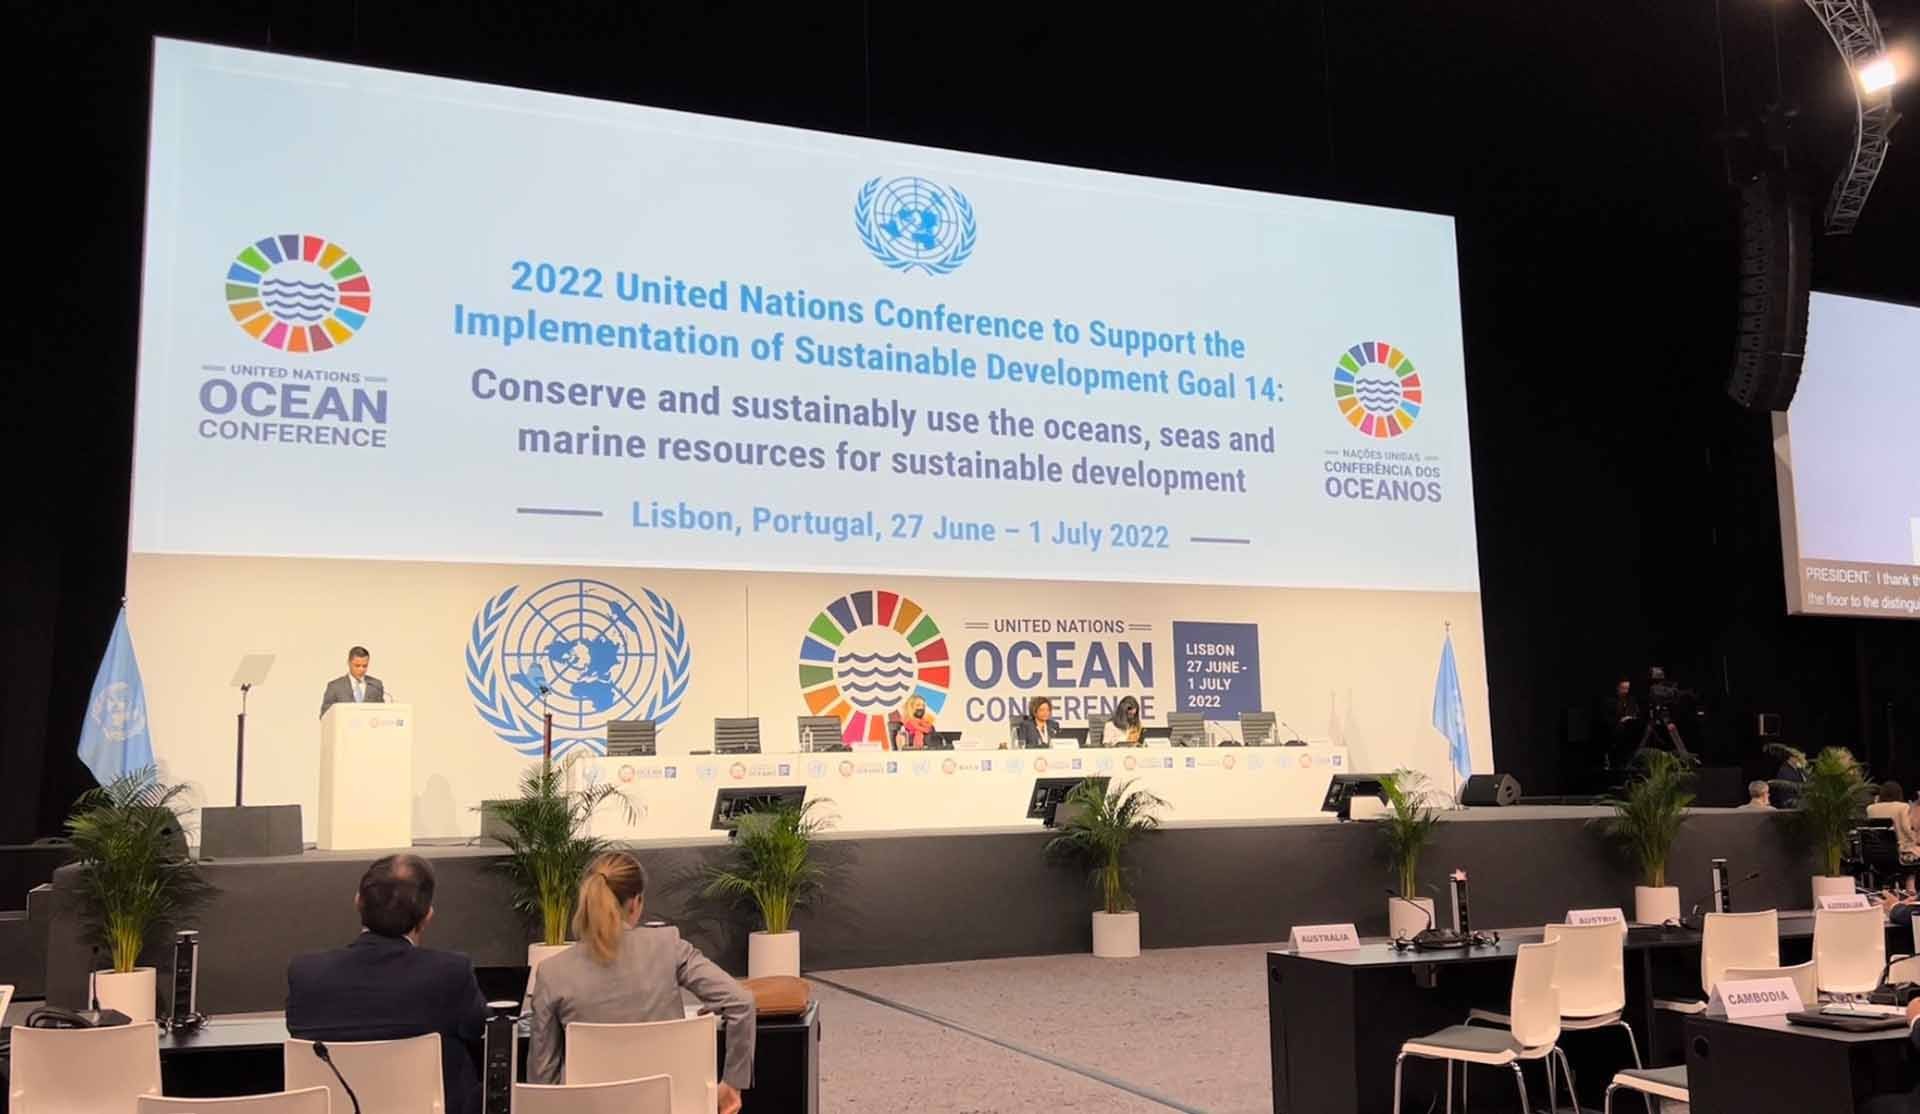 Hội nghị cấp cao Liên hợp quốc về hỗ trợ thực hiện SDG 14 về bảo tồn và sử dụng bền vững đại dương, biển và nguồn lợi biển từ 27/6- 1/7, tại thủ đô Lisbon, Bồ Đào Nha.